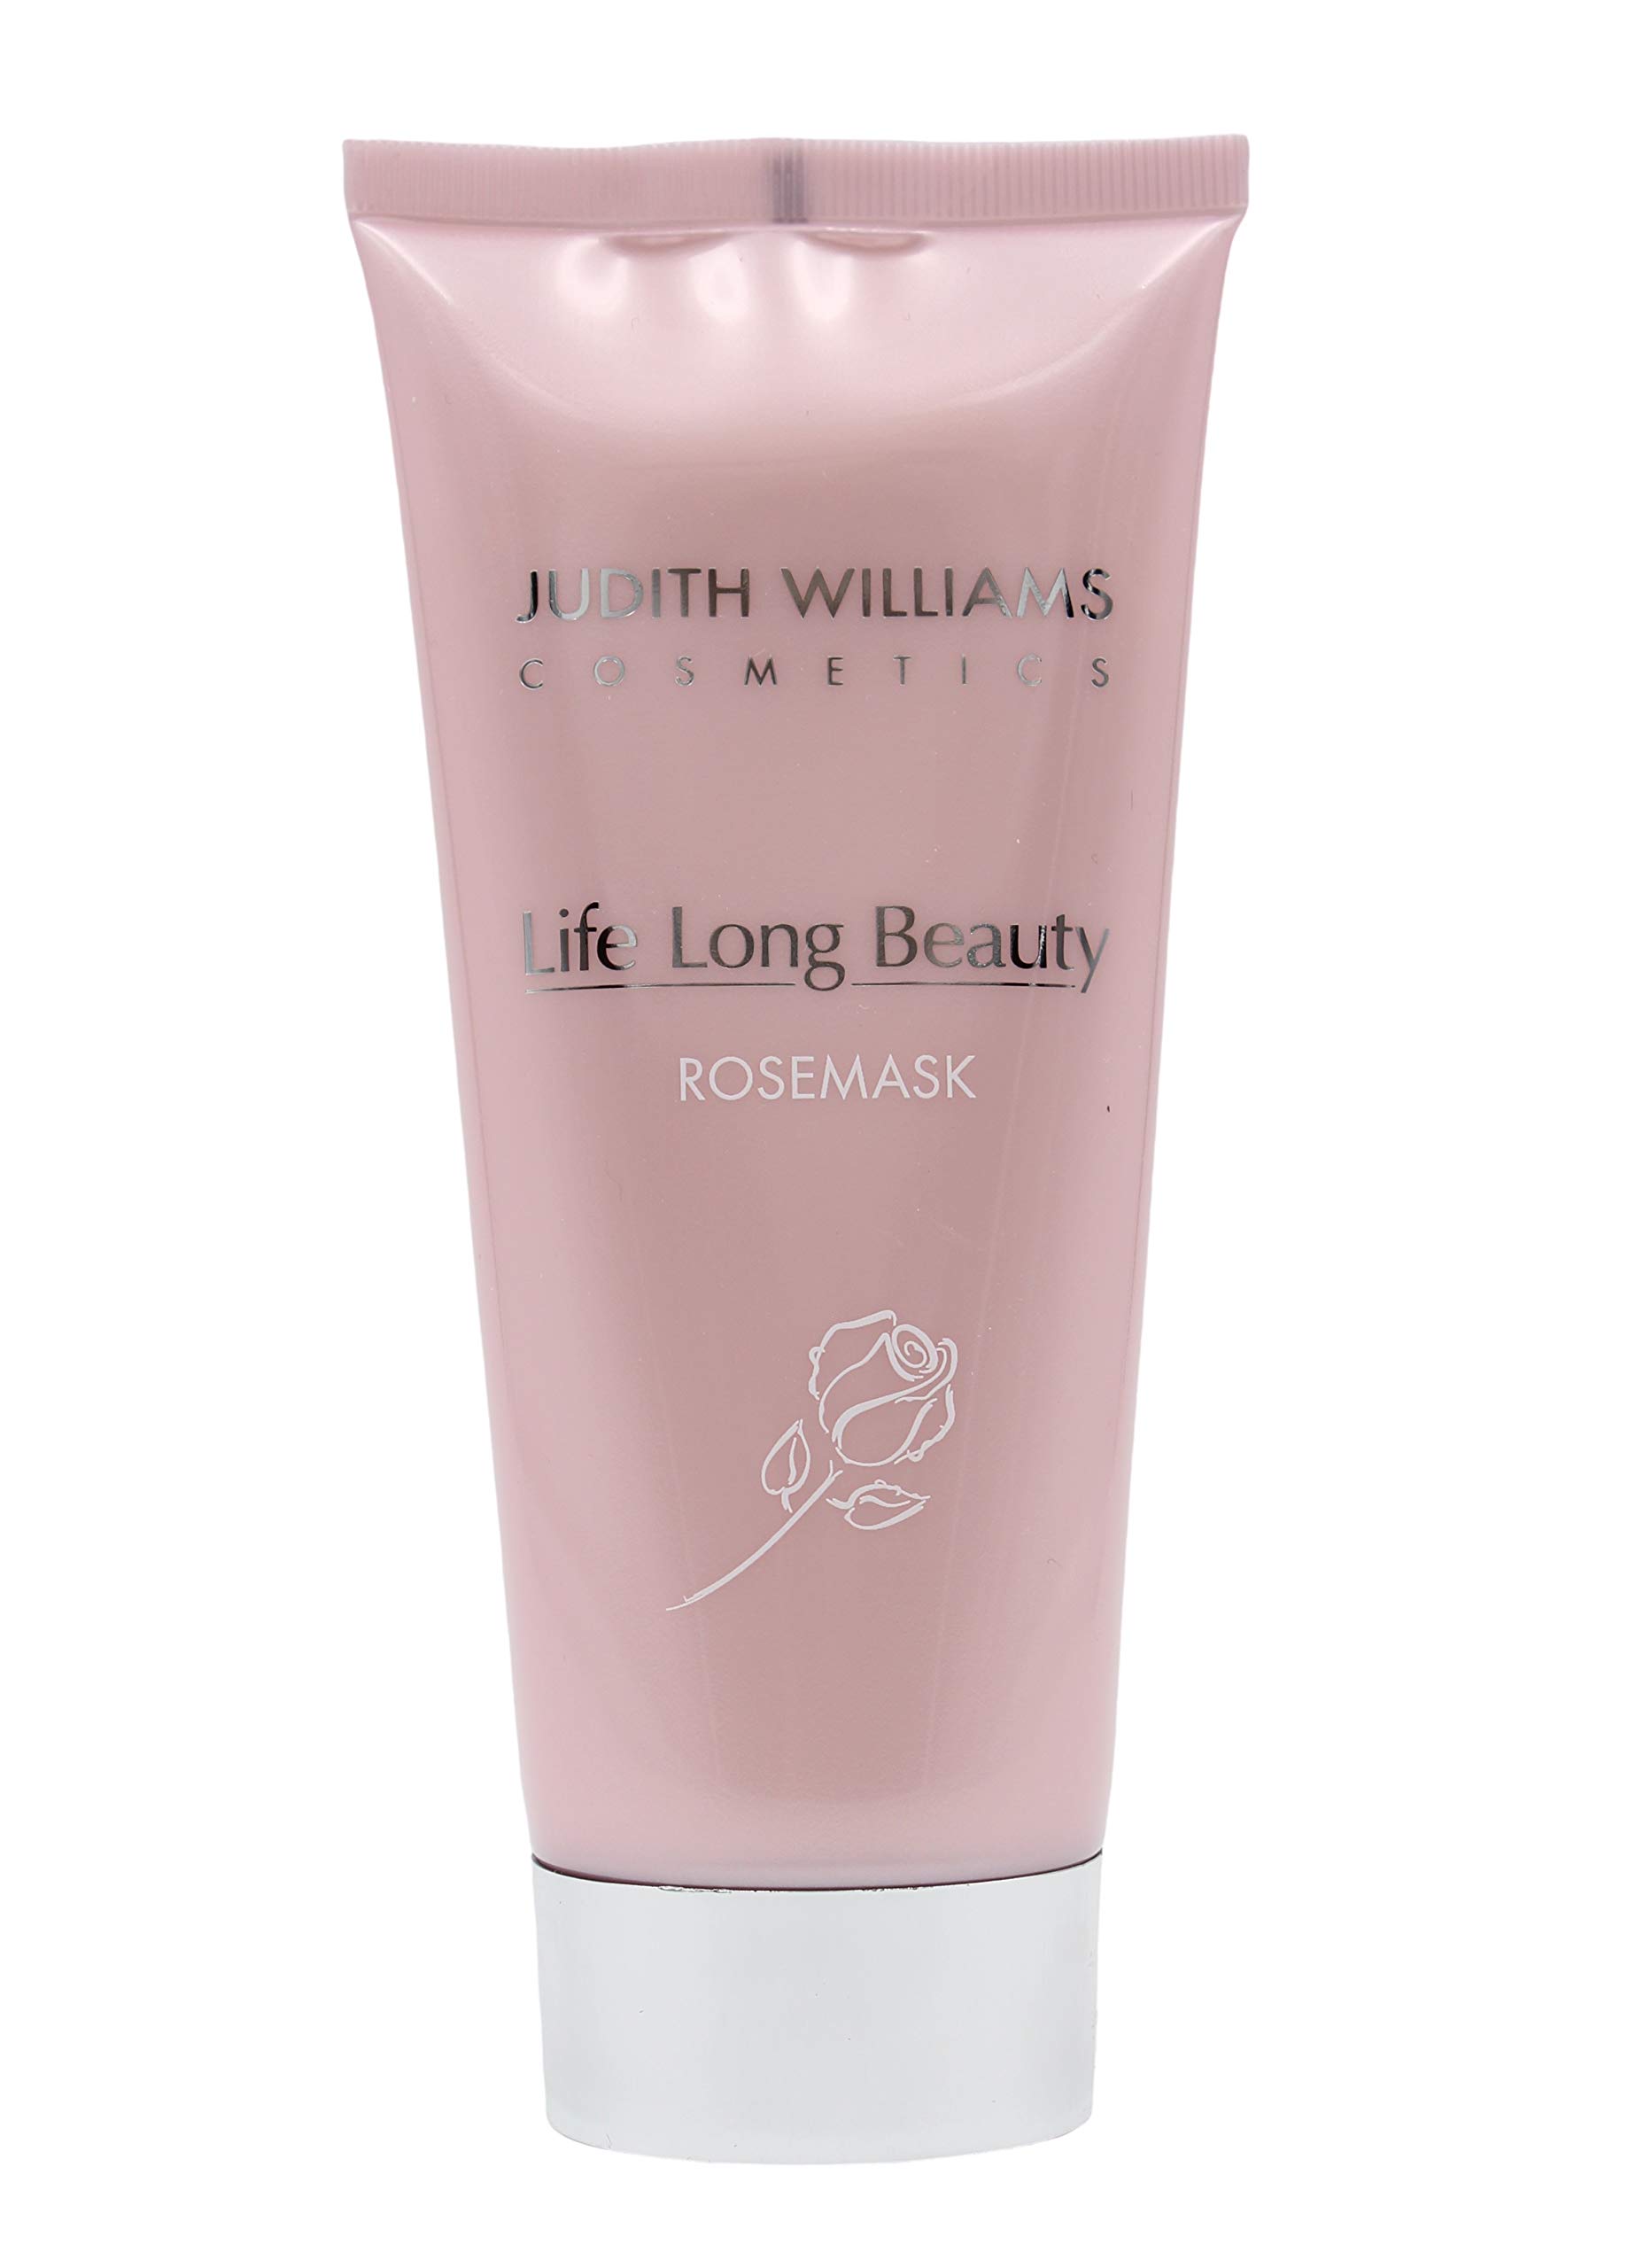 Judith Williams Life Long Beauty Rosenmaske Tube 200ml I reichhaltige Gesichtsmaske I für die reife, trockene und gereizte Haut mit der geballten Kraft der Rosen